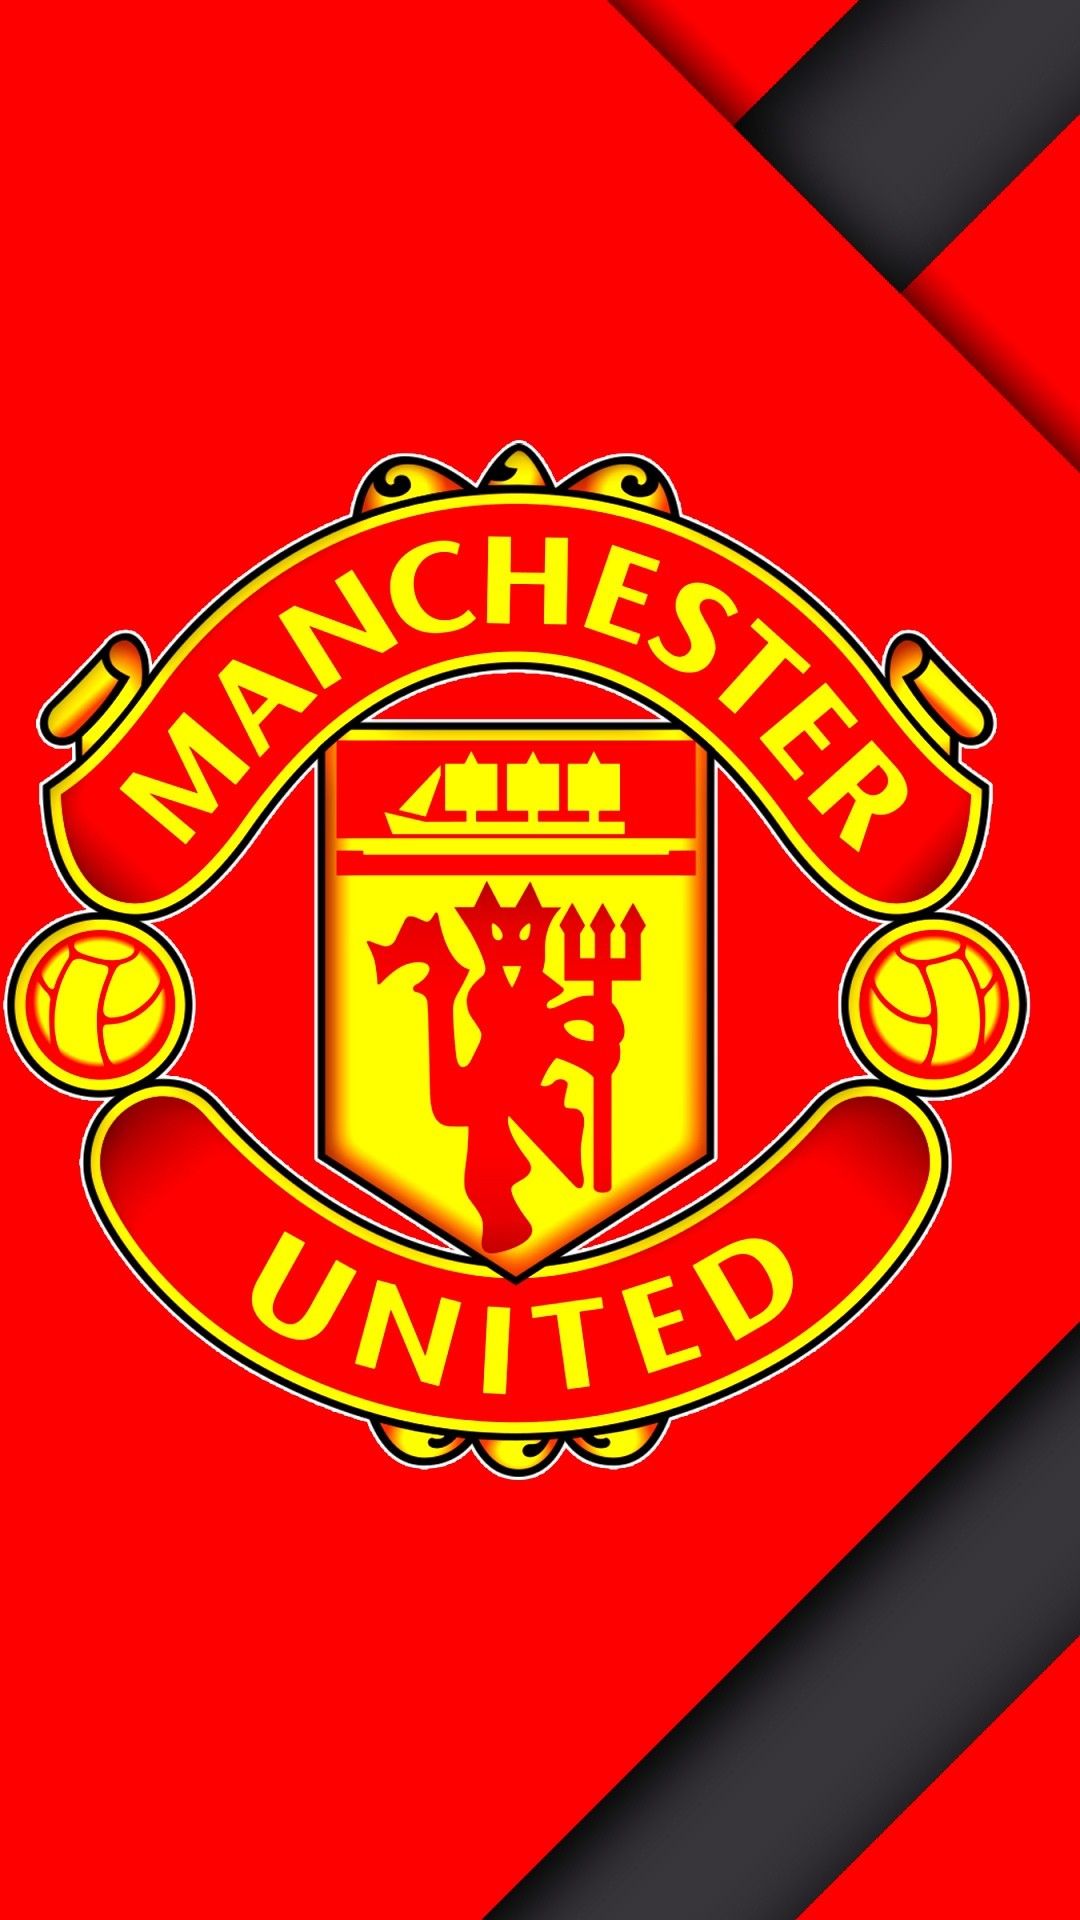 Logo của Manchester United là biểu tượng đã trở nên quen thuộc đối với người hâm mộ bóng đá của đội bóng này. Bức hình nền đẹp với hình ảnh logo MU sẽ làm bạn nhớ đến ngay những trận đấu kịch tính và những kỷ niệm đáng nhớ của đội bóng này.